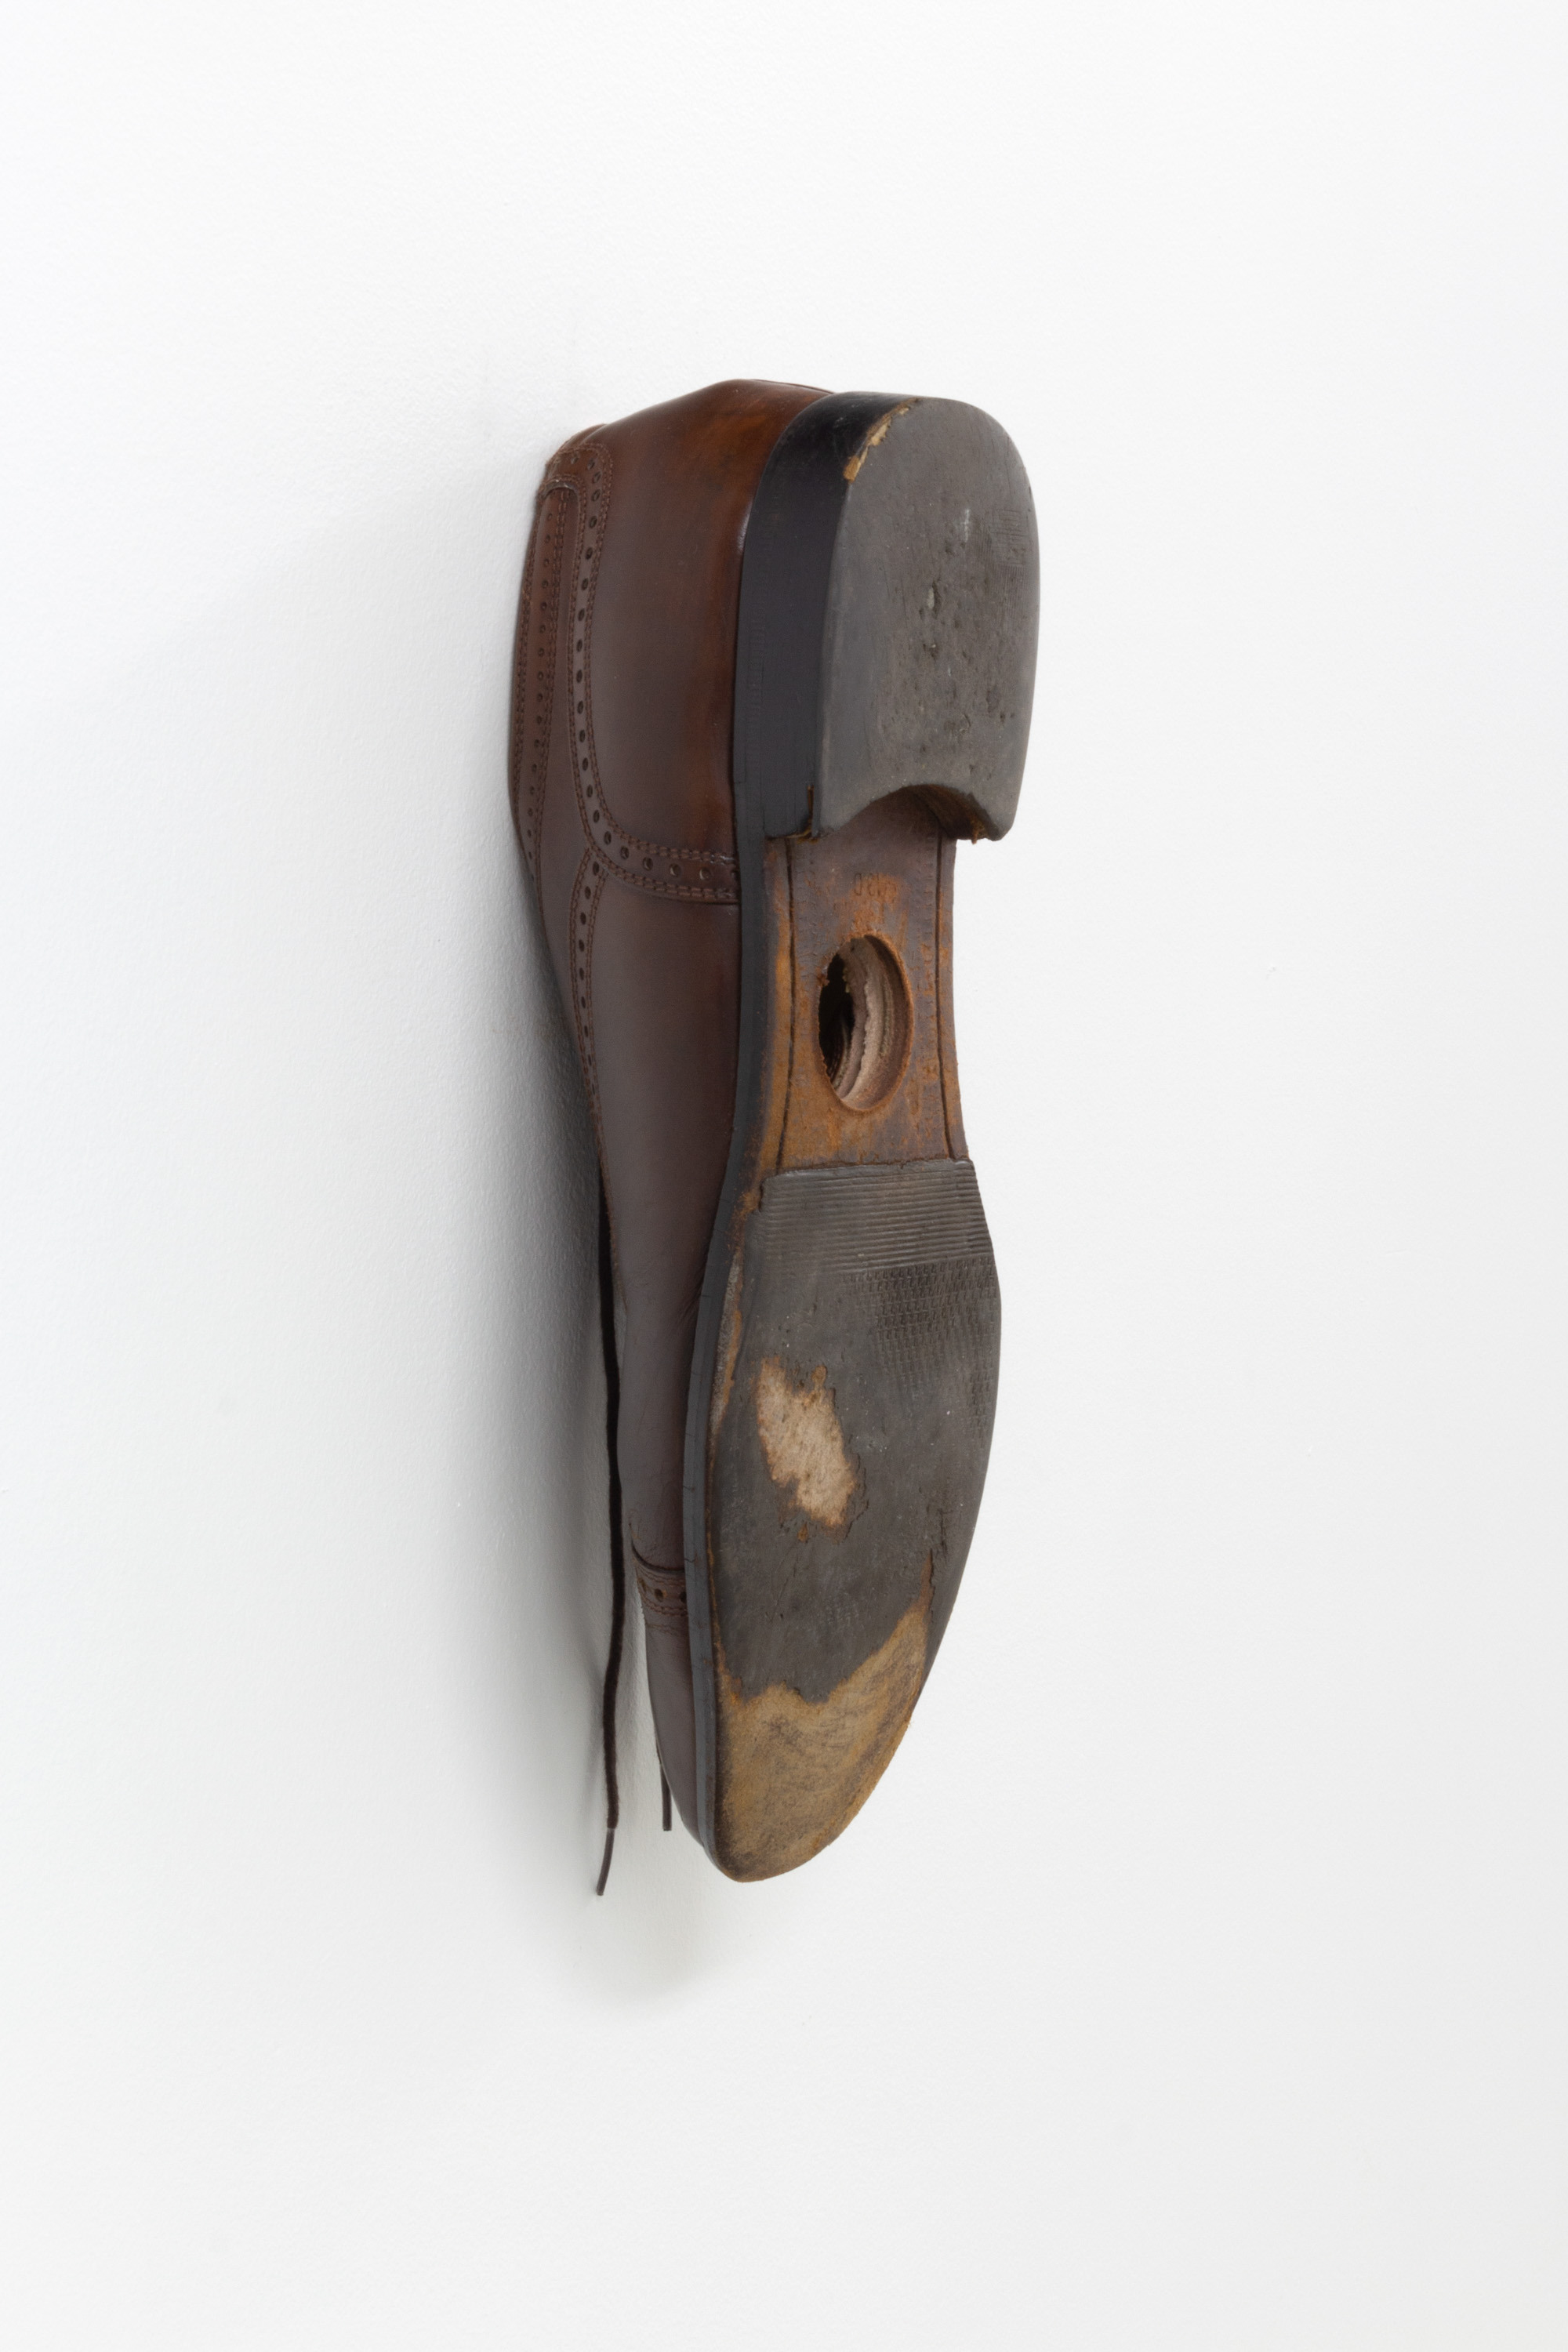 Bea Fremderman, Birdhouse, 2022, Men's dress shoe, 12.75 x 4.5 x 5 in